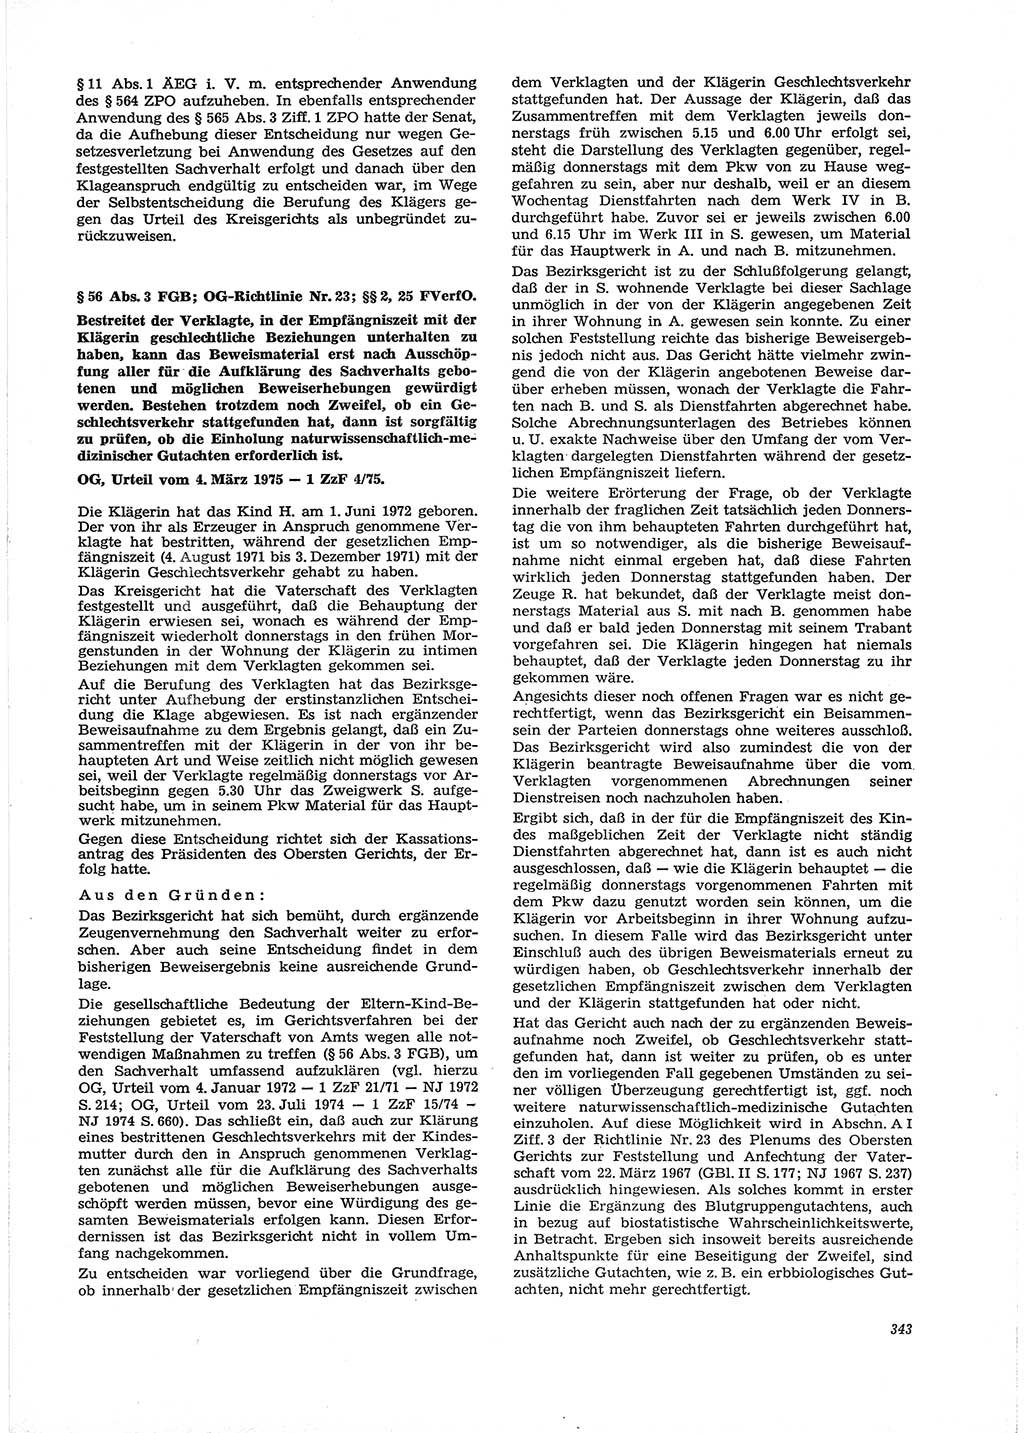 Neue Justiz (NJ), Zeitschrift für Recht und Rechtswissenschaft [Deutsche Demokratische Republik (DDR)], 29. Jahrgang 1975, Seite 343 (NJ DDR 1975, S. 343)